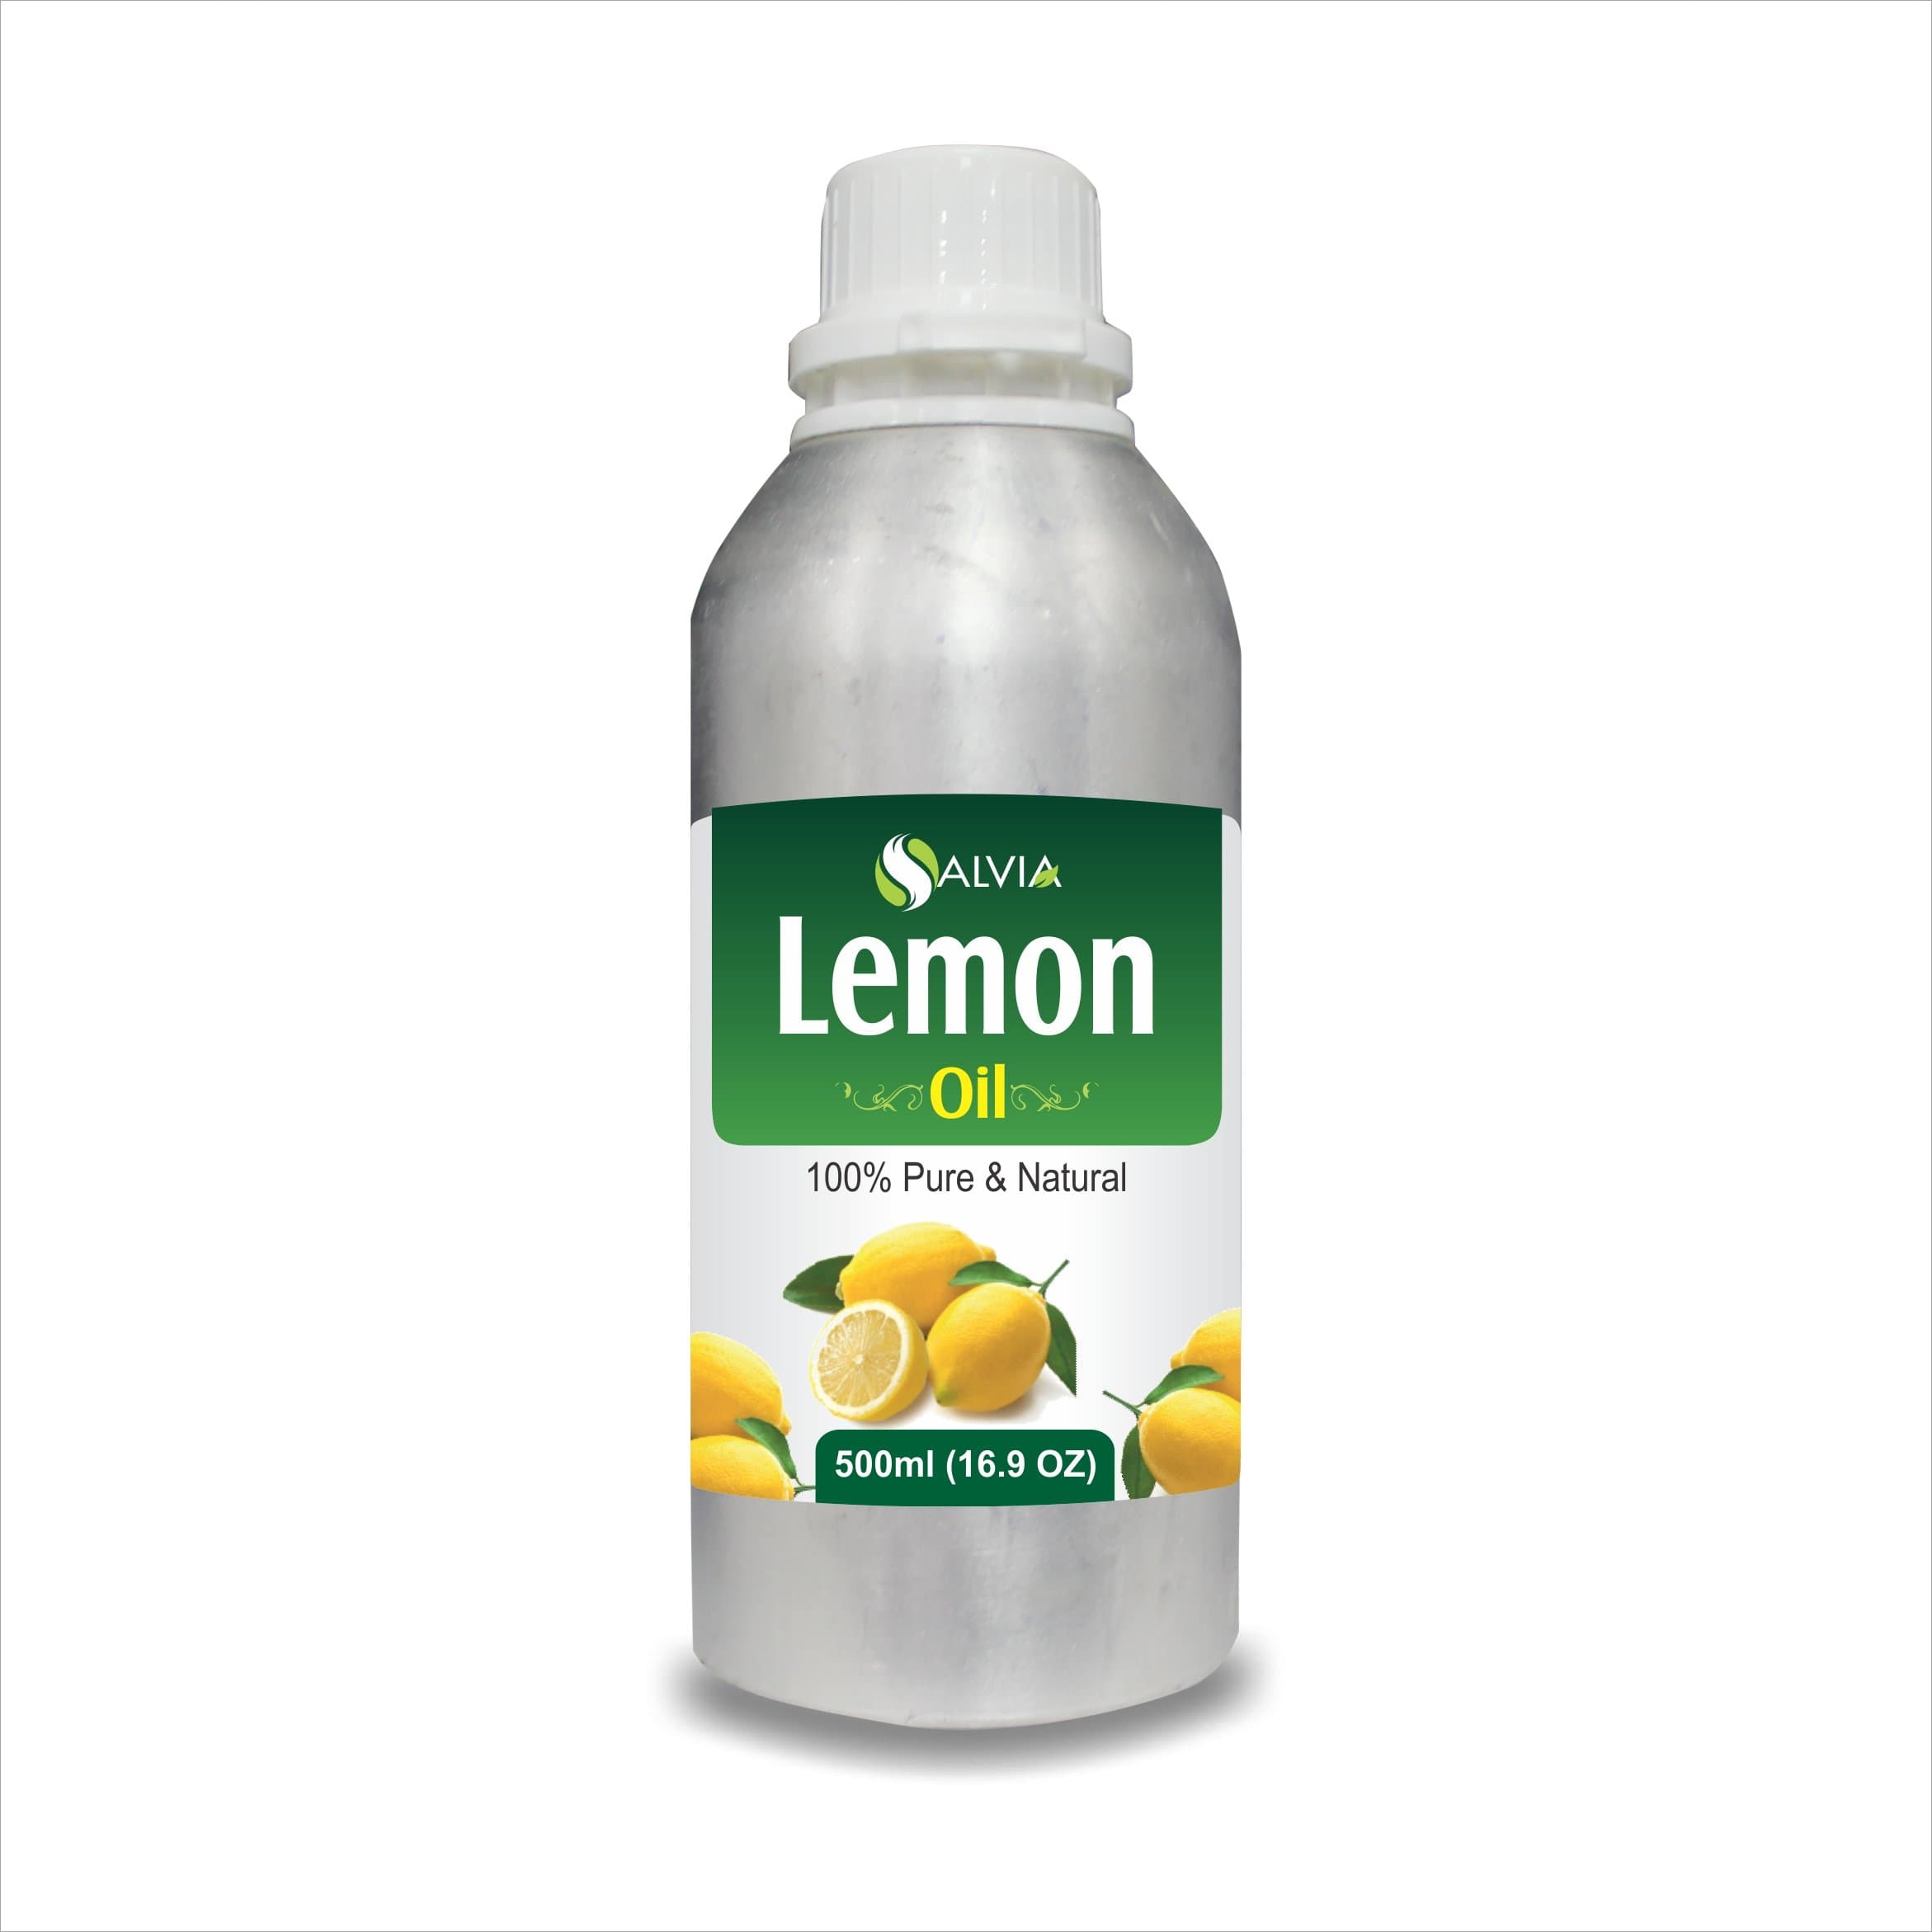 lemon oil benefits for skin